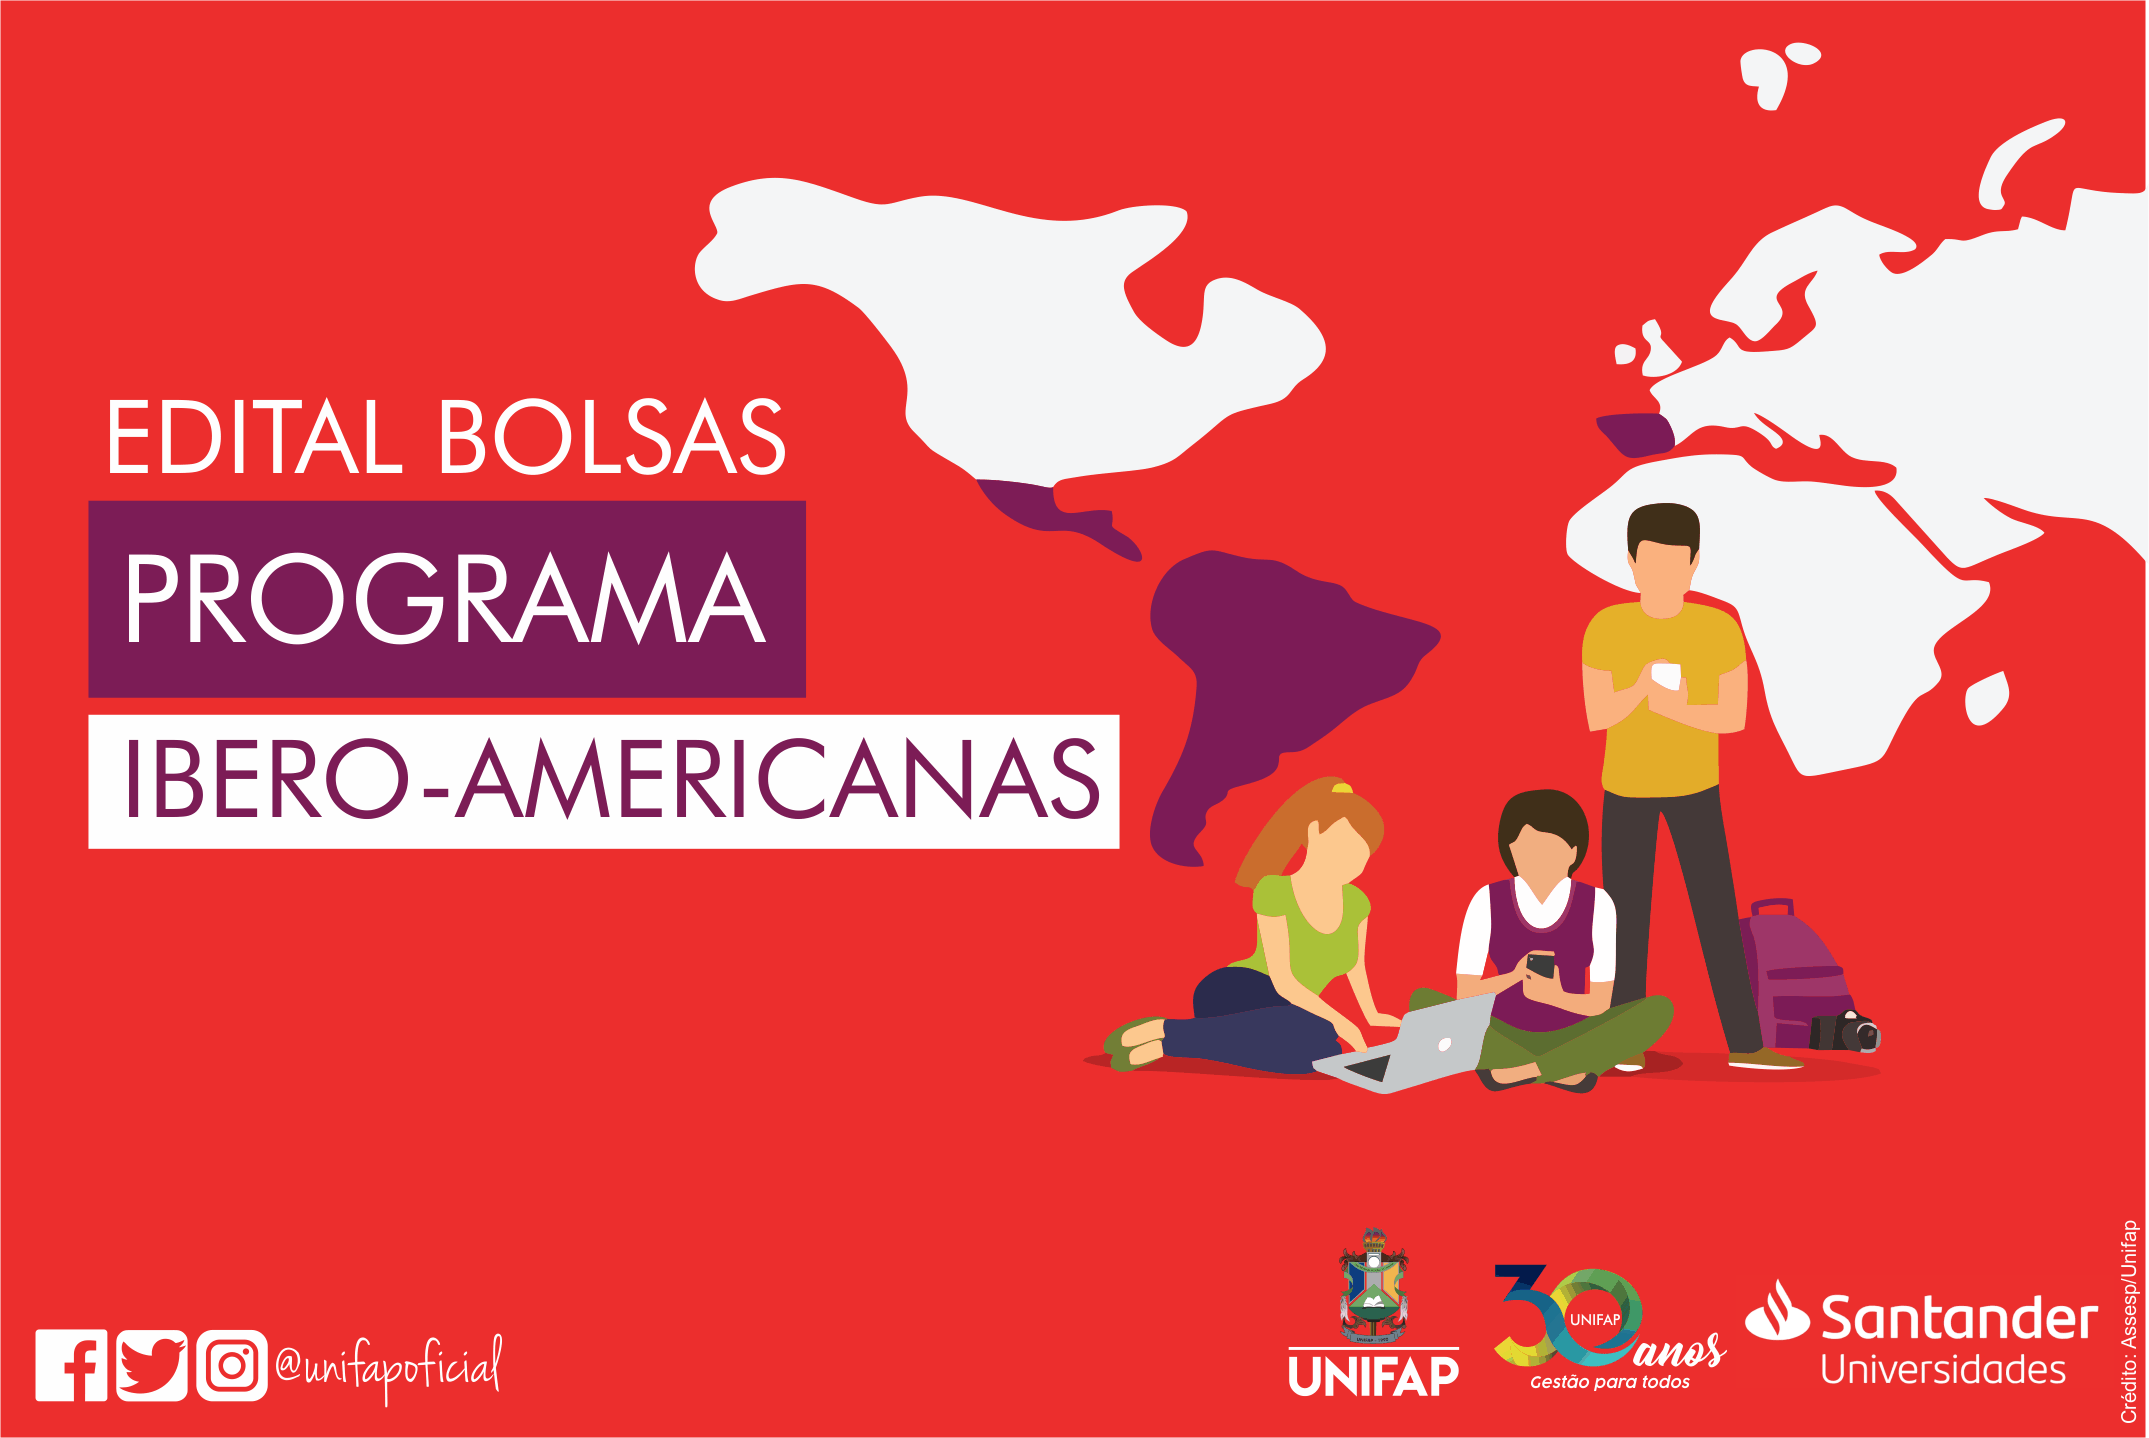 Inscrições para Programa de Bolsas Ibero-Americanas segue até dia 23, participe